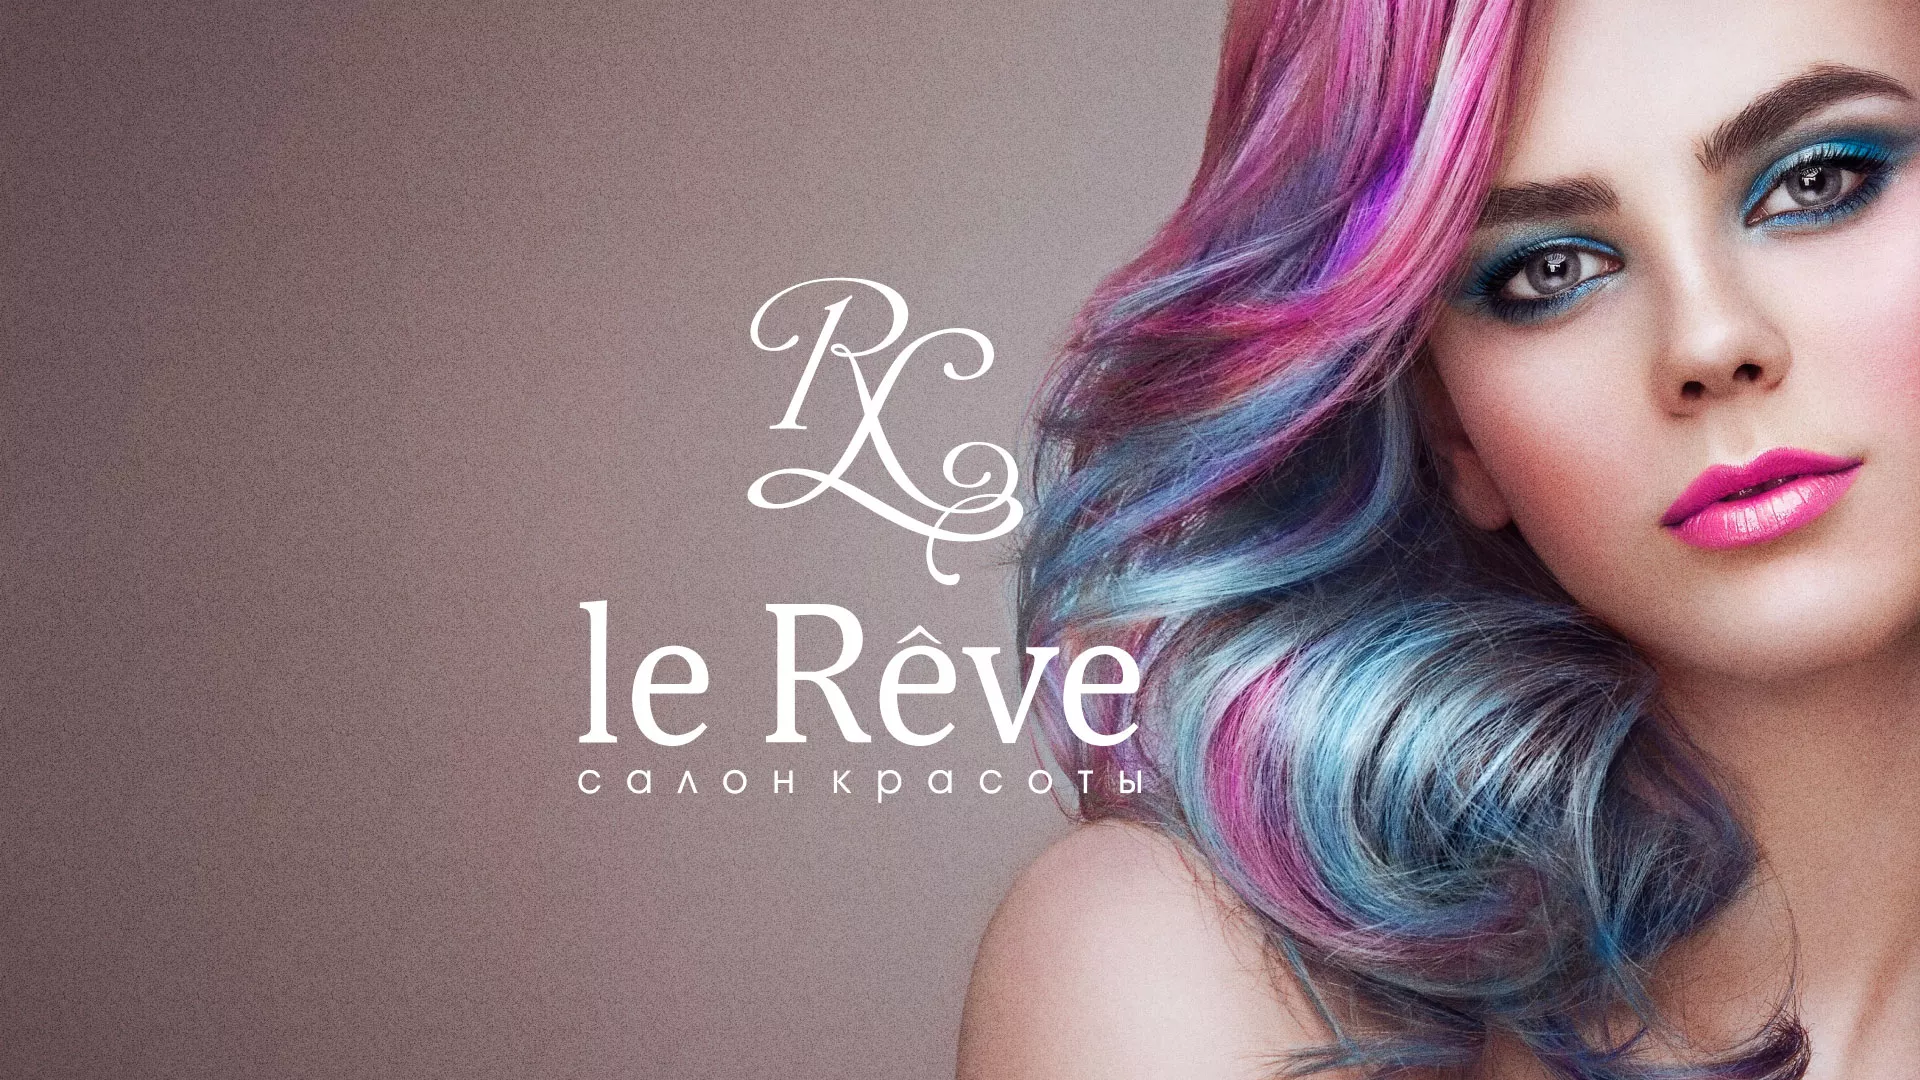 Создание сайта для салона красоты «Le Reve» в Михайловке